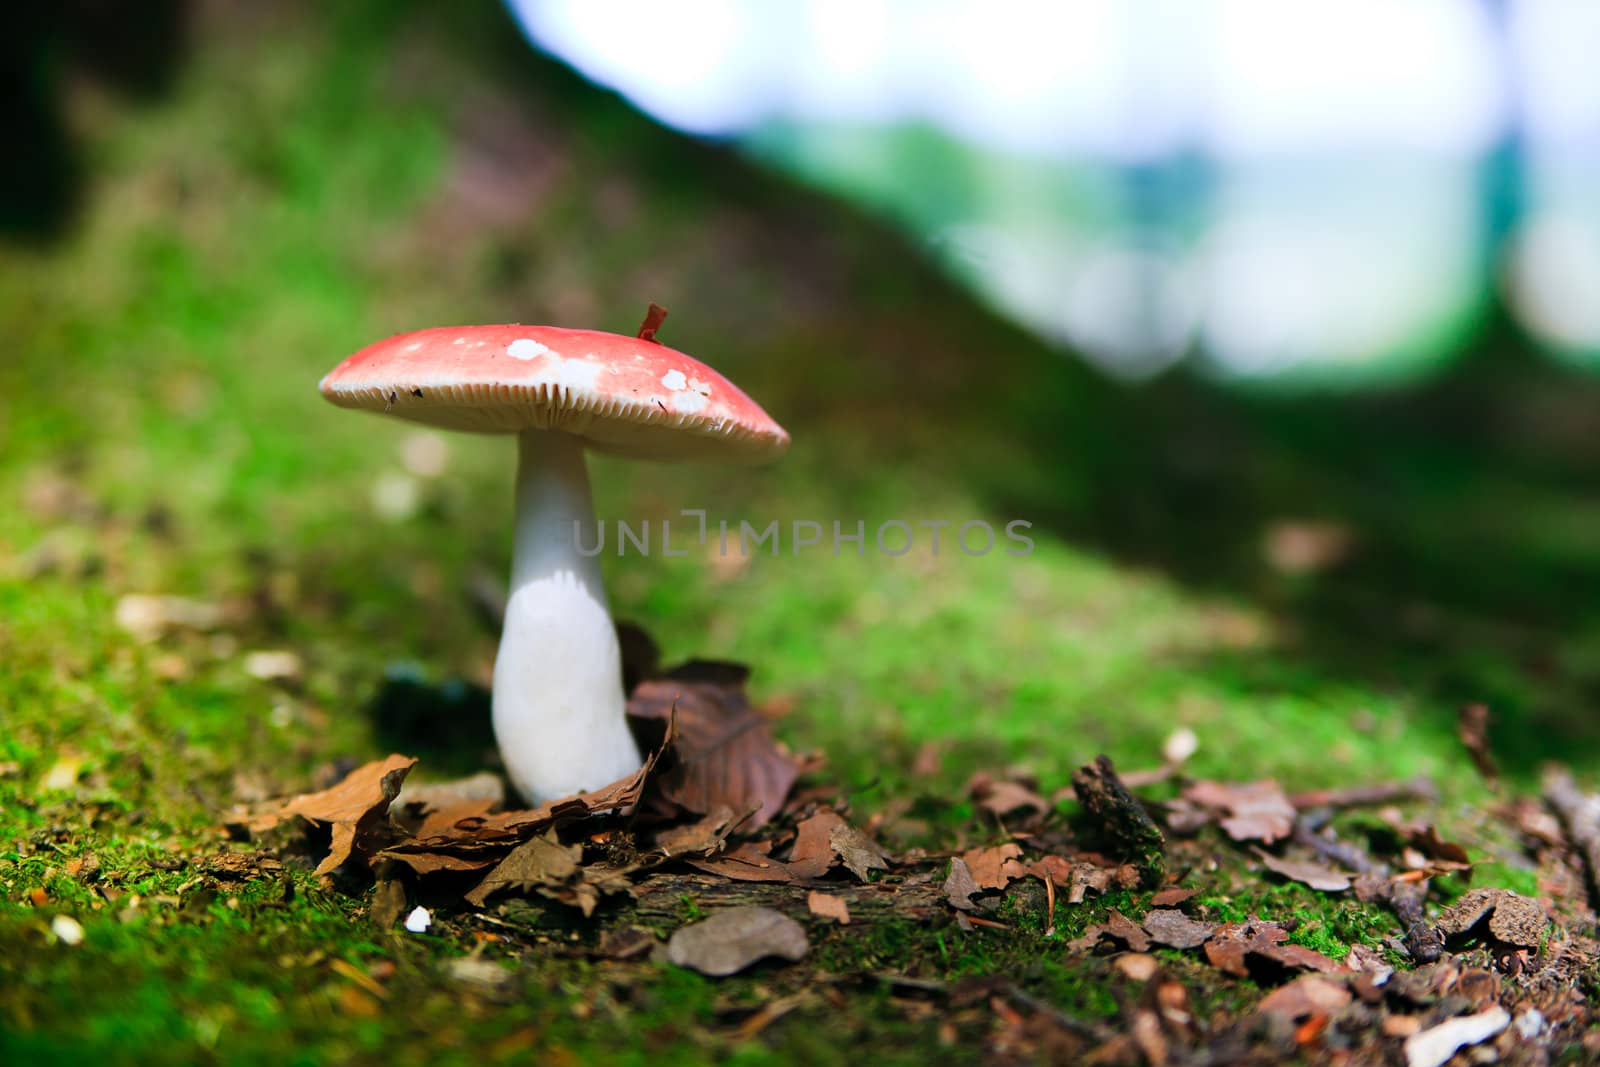 Fungi by anobis